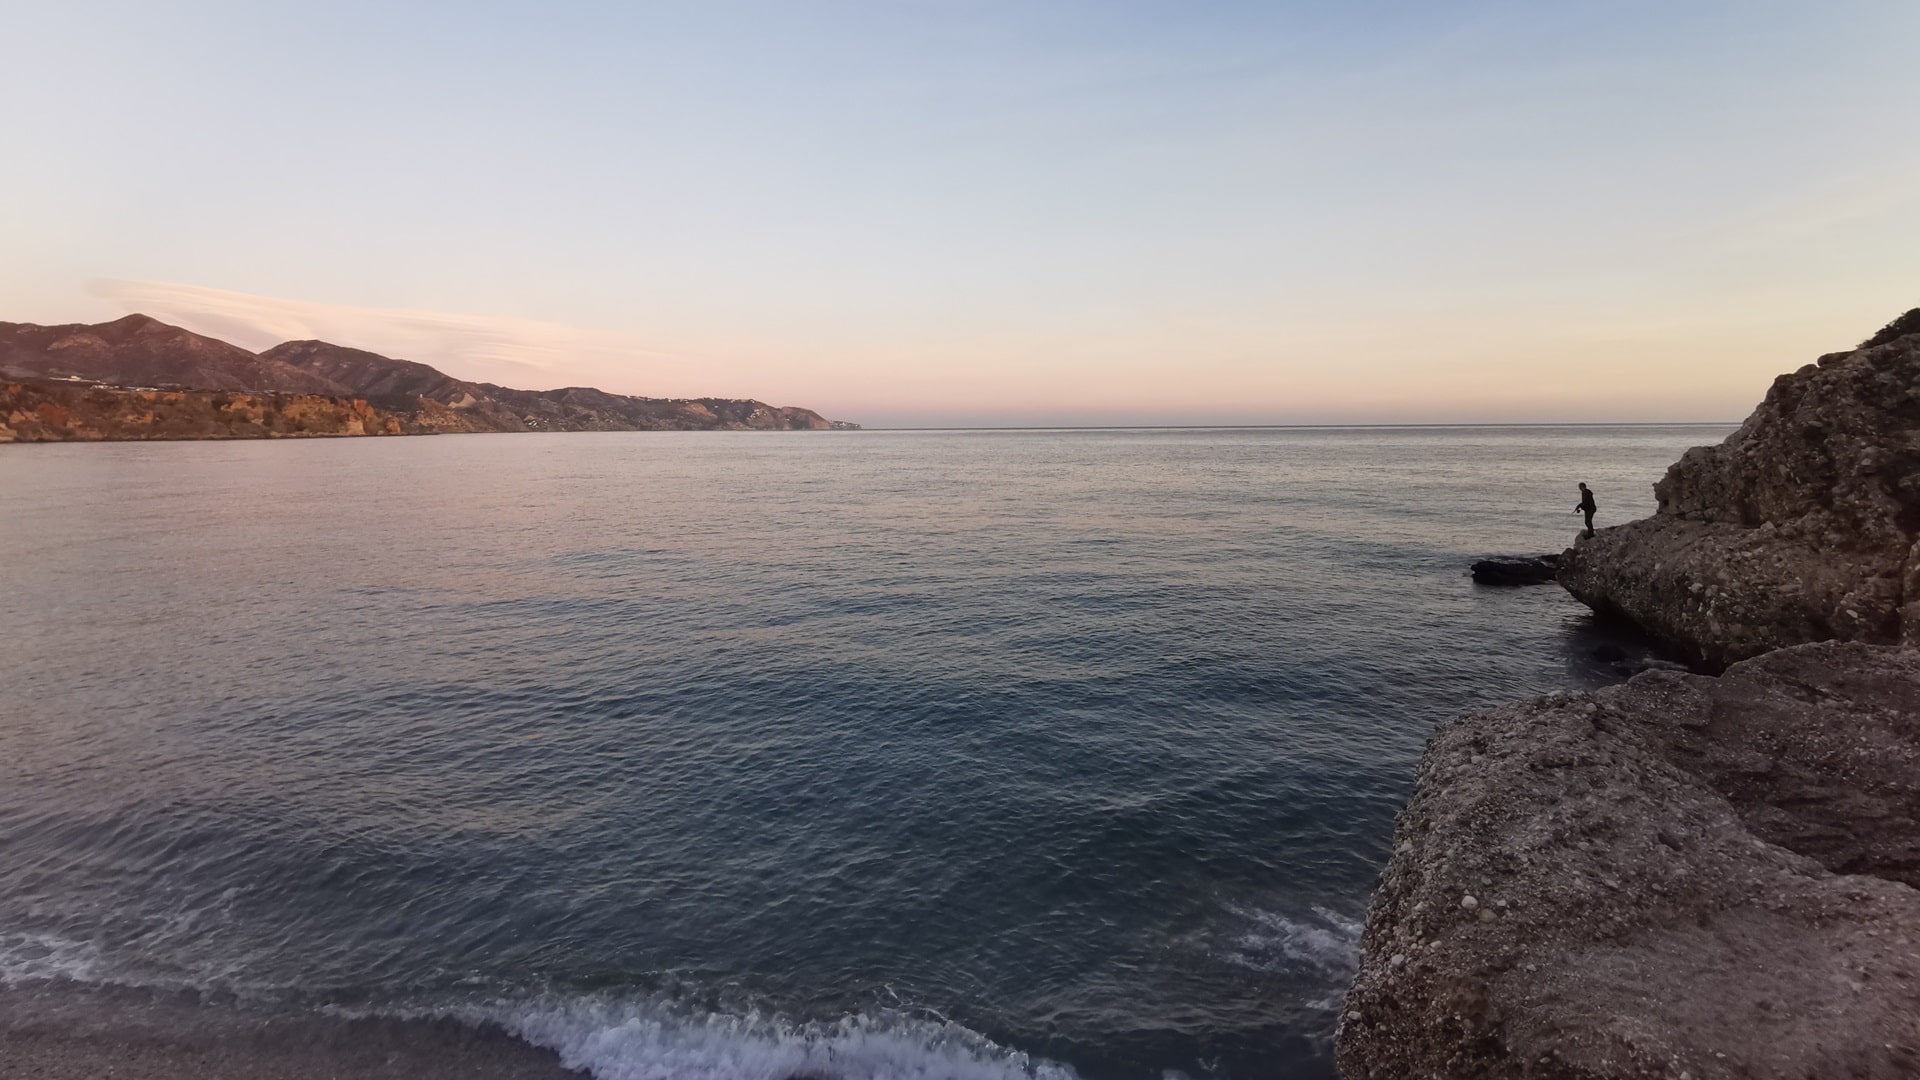 Abendstimmung in Nerja, einer Küstenstadt in Andalusien, Spanien, mit Blick auf das Mittelmeer, die braune Felsenküste, einen Angler, der sein Glück mit der Spinnrute versucht, und einen klaren, hellblauen Himmel.